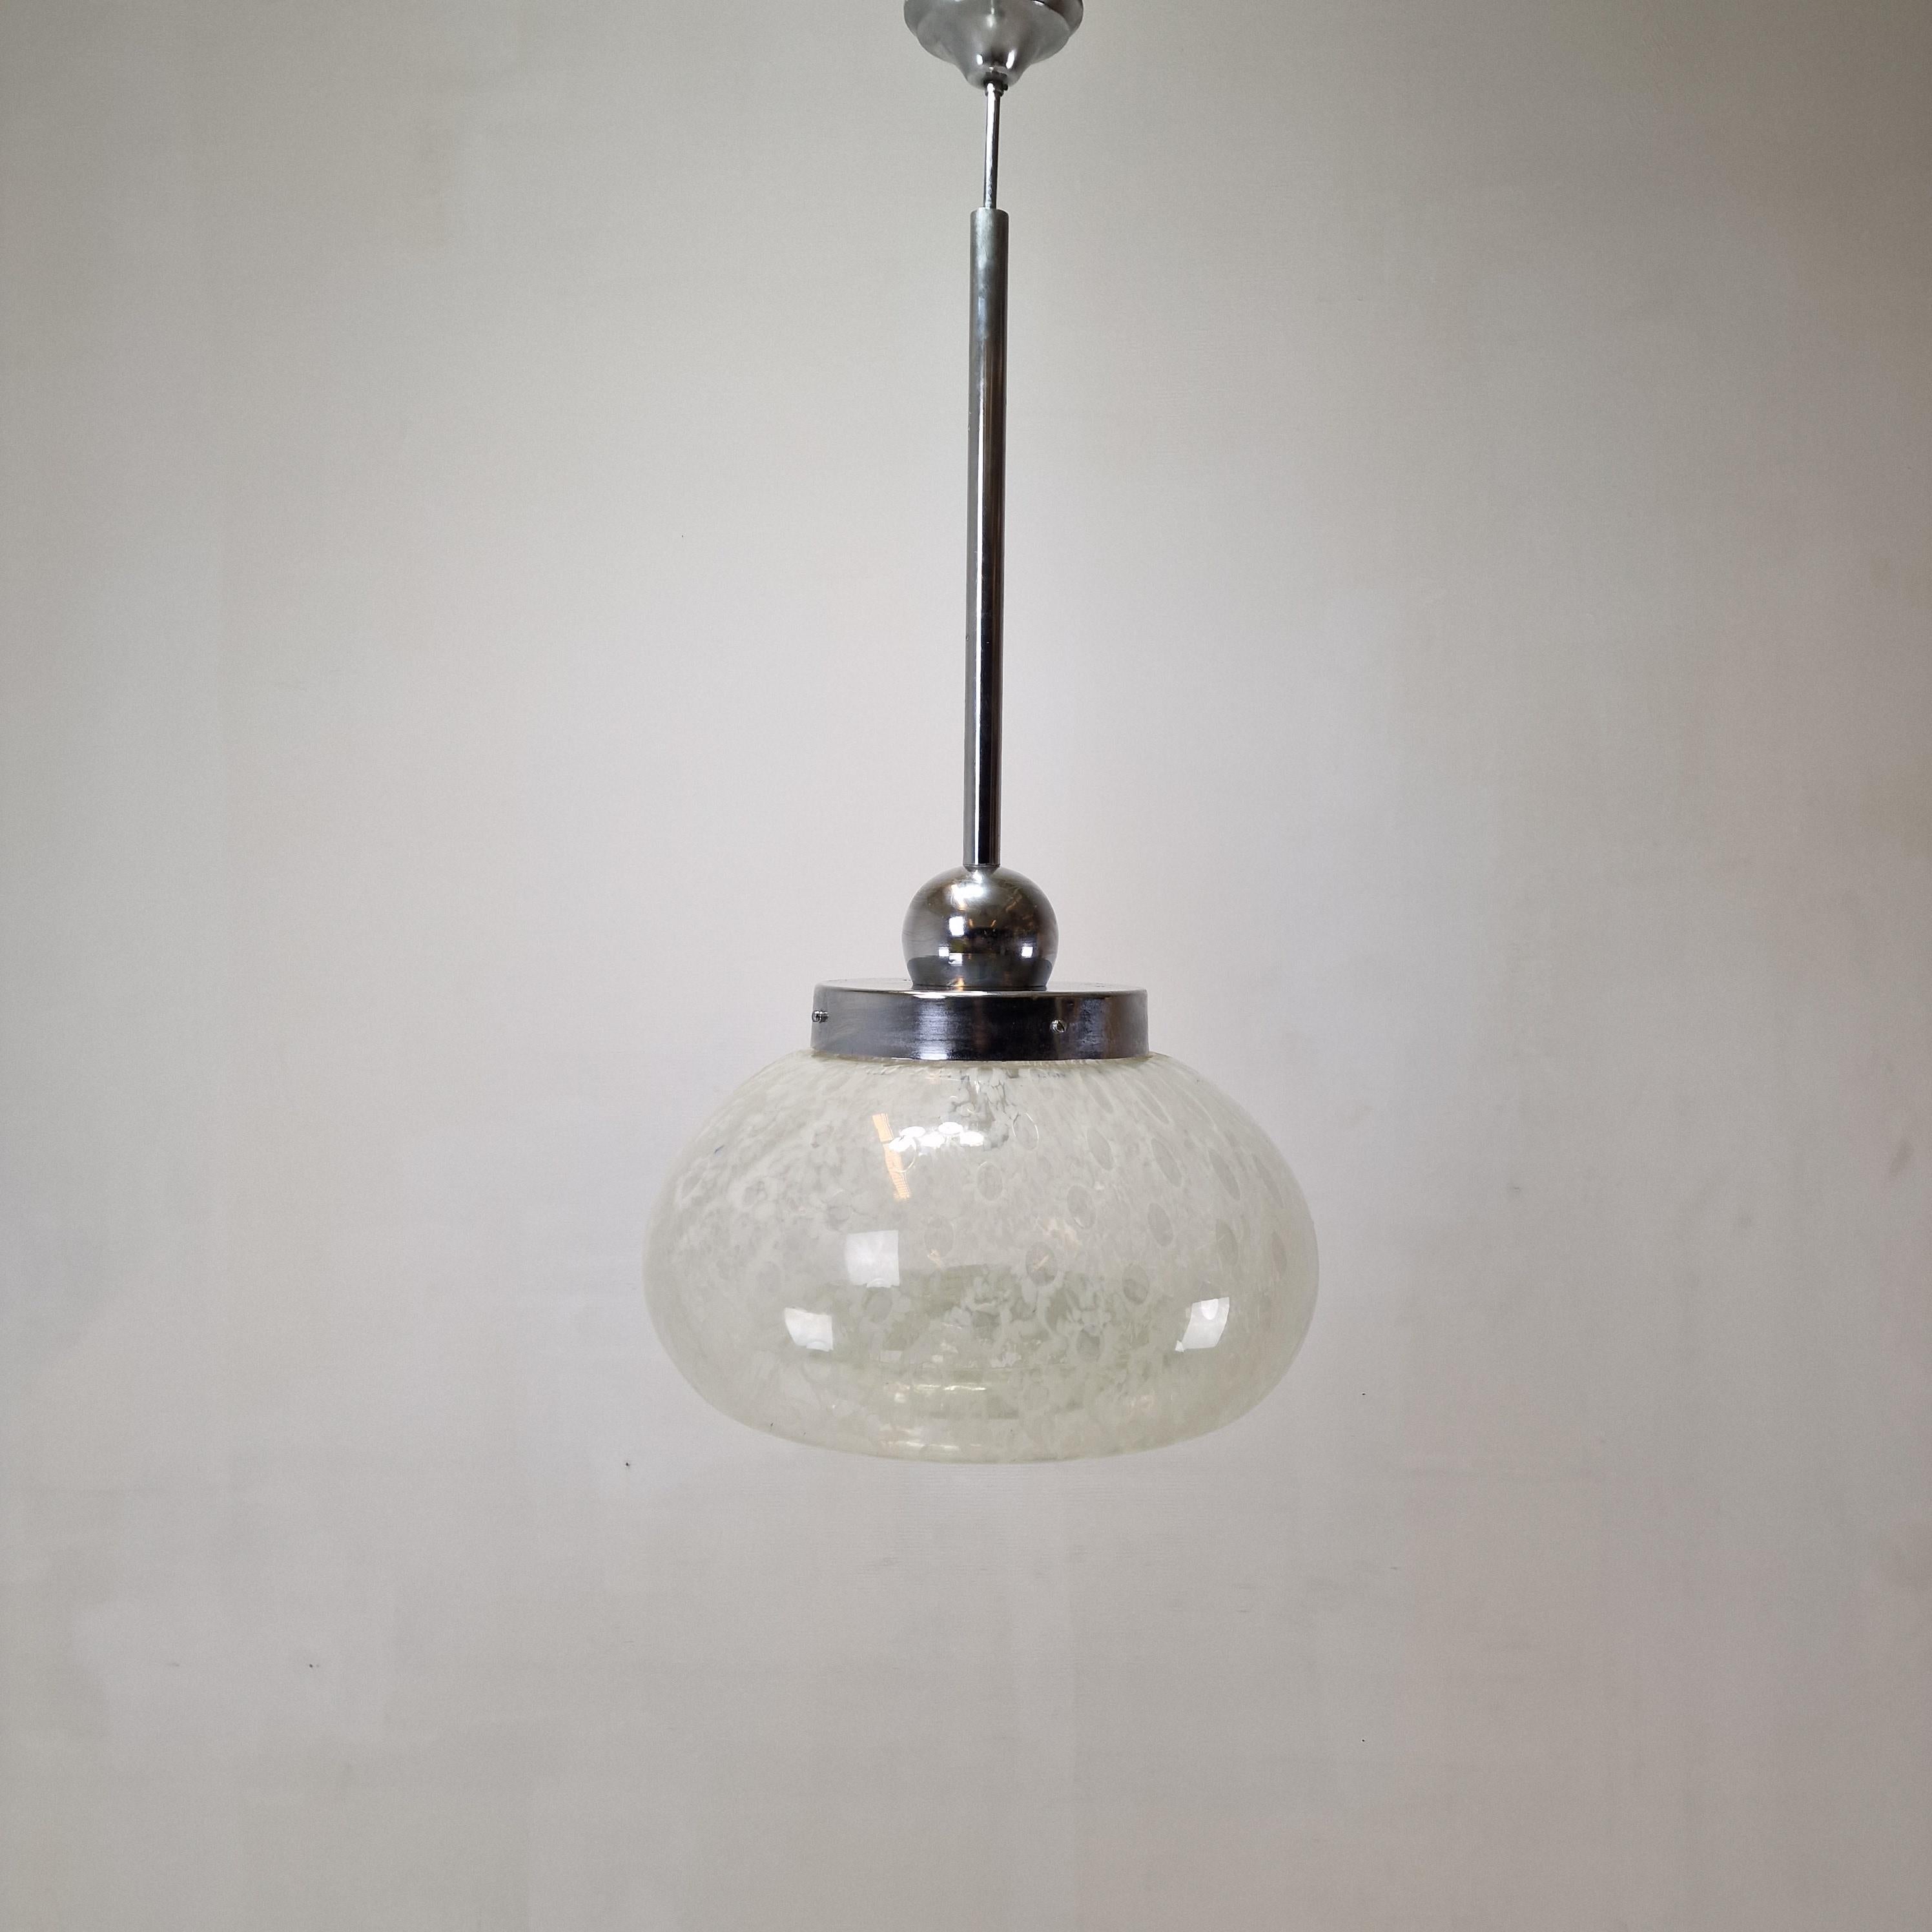 Superbe et rare pendentif italien produit dans les années 1970.
Belle et très grande ampoule en verre soufflé à la main de Murano en verre transparent avec de très beaux accents blancs.

Grâce à la texture de l'abat-jour, la lampe diffuse une